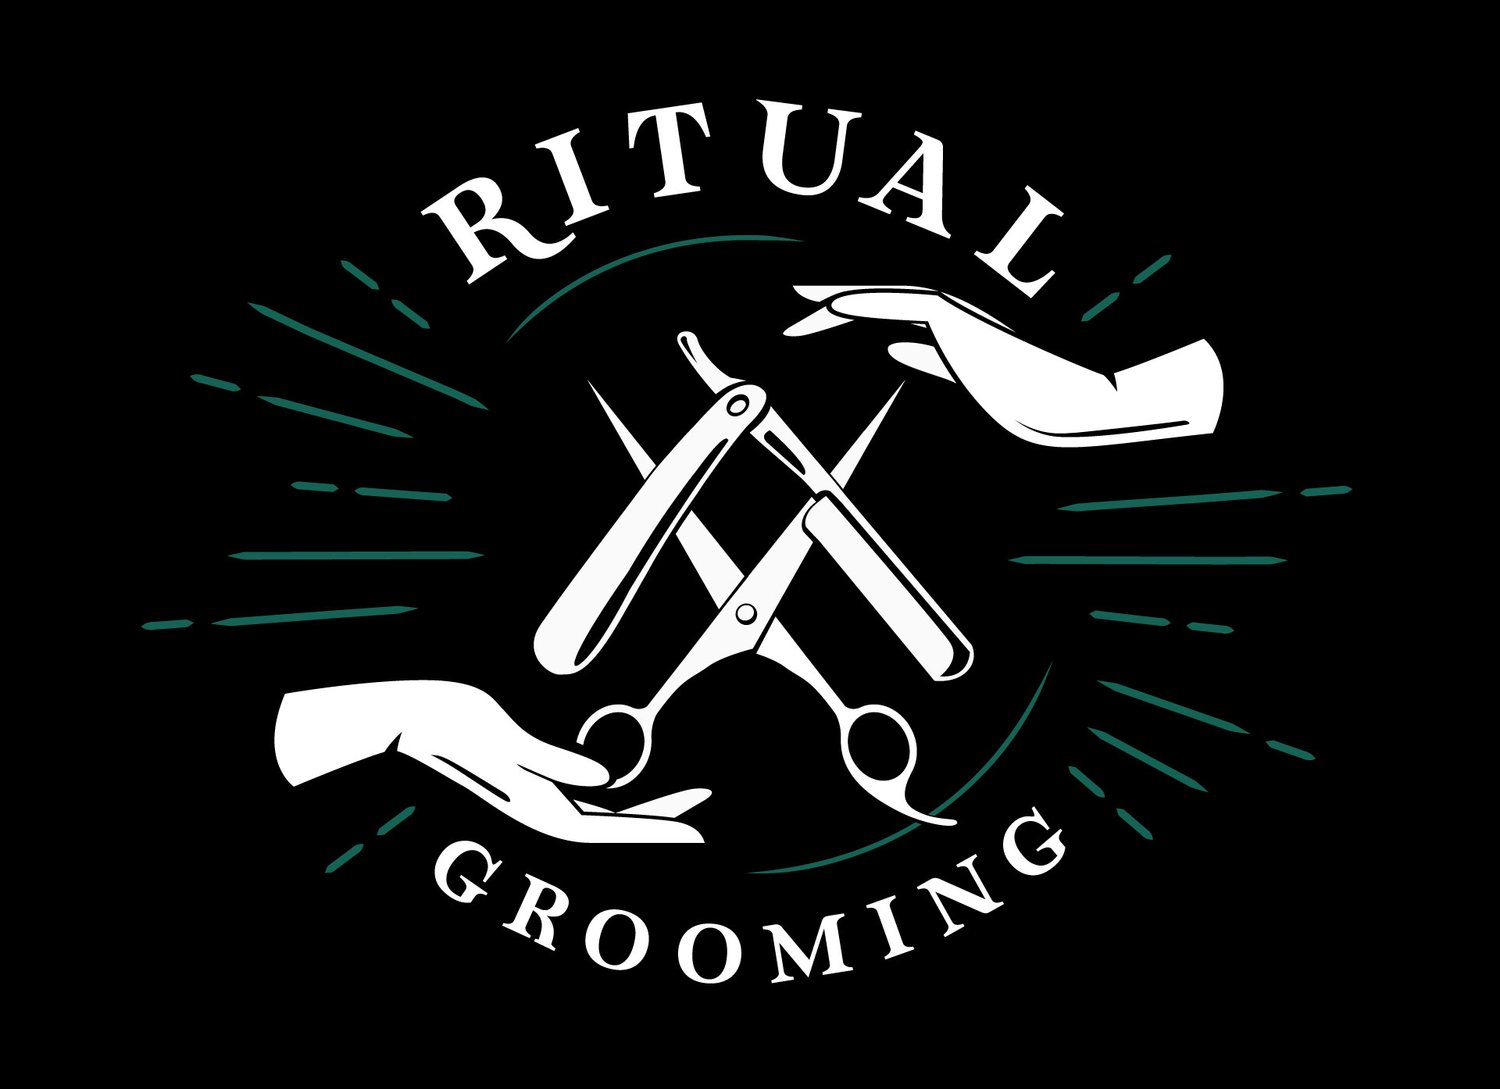 Ritual Grooming